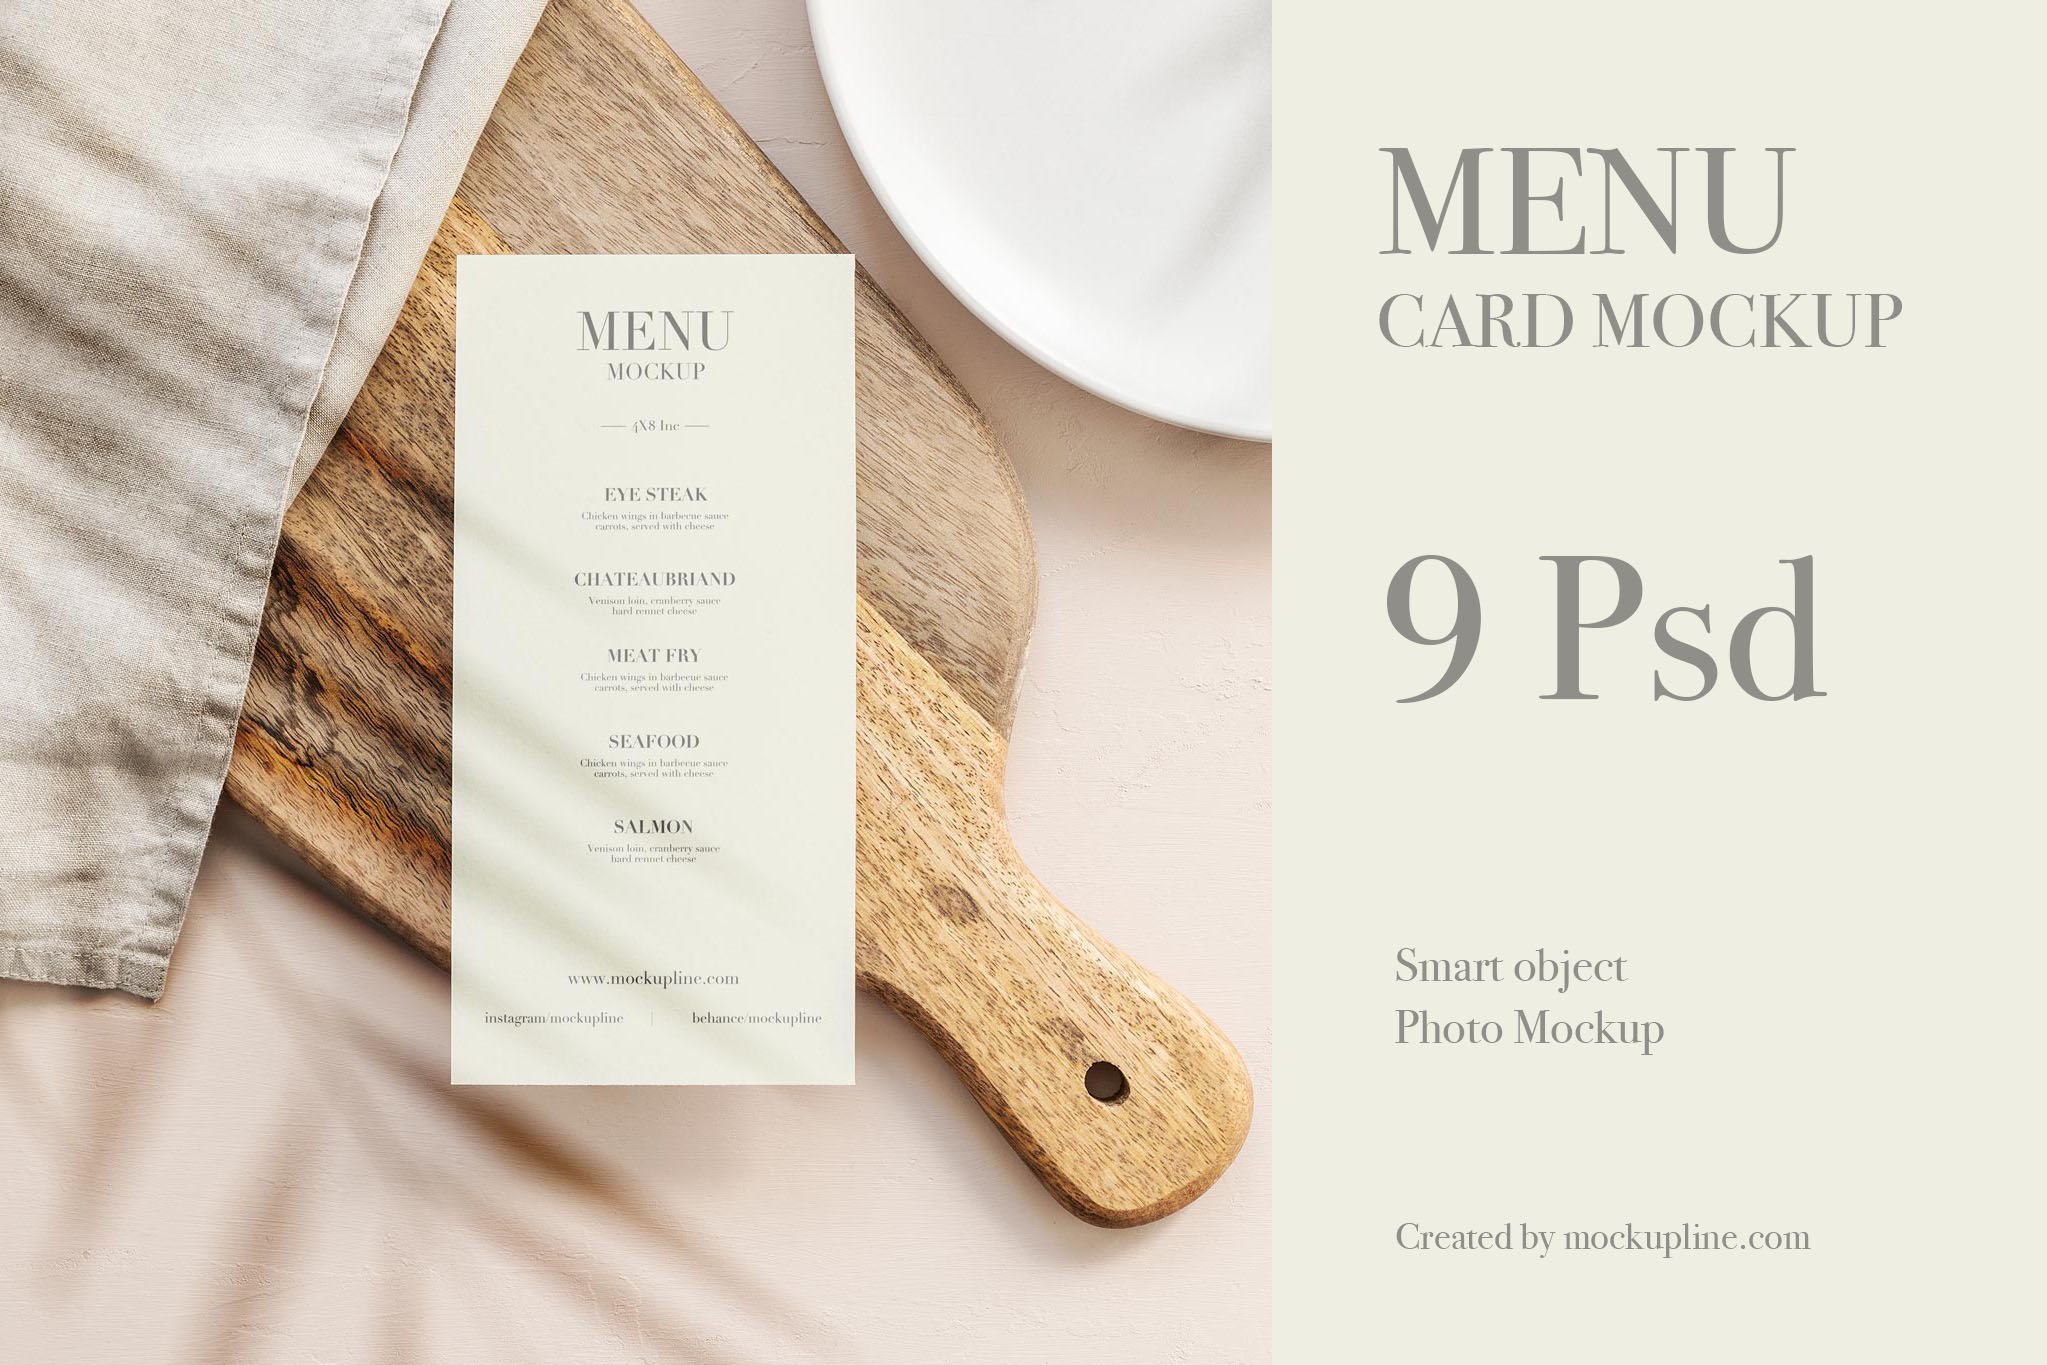 Menu Card Mockup Set cover image.